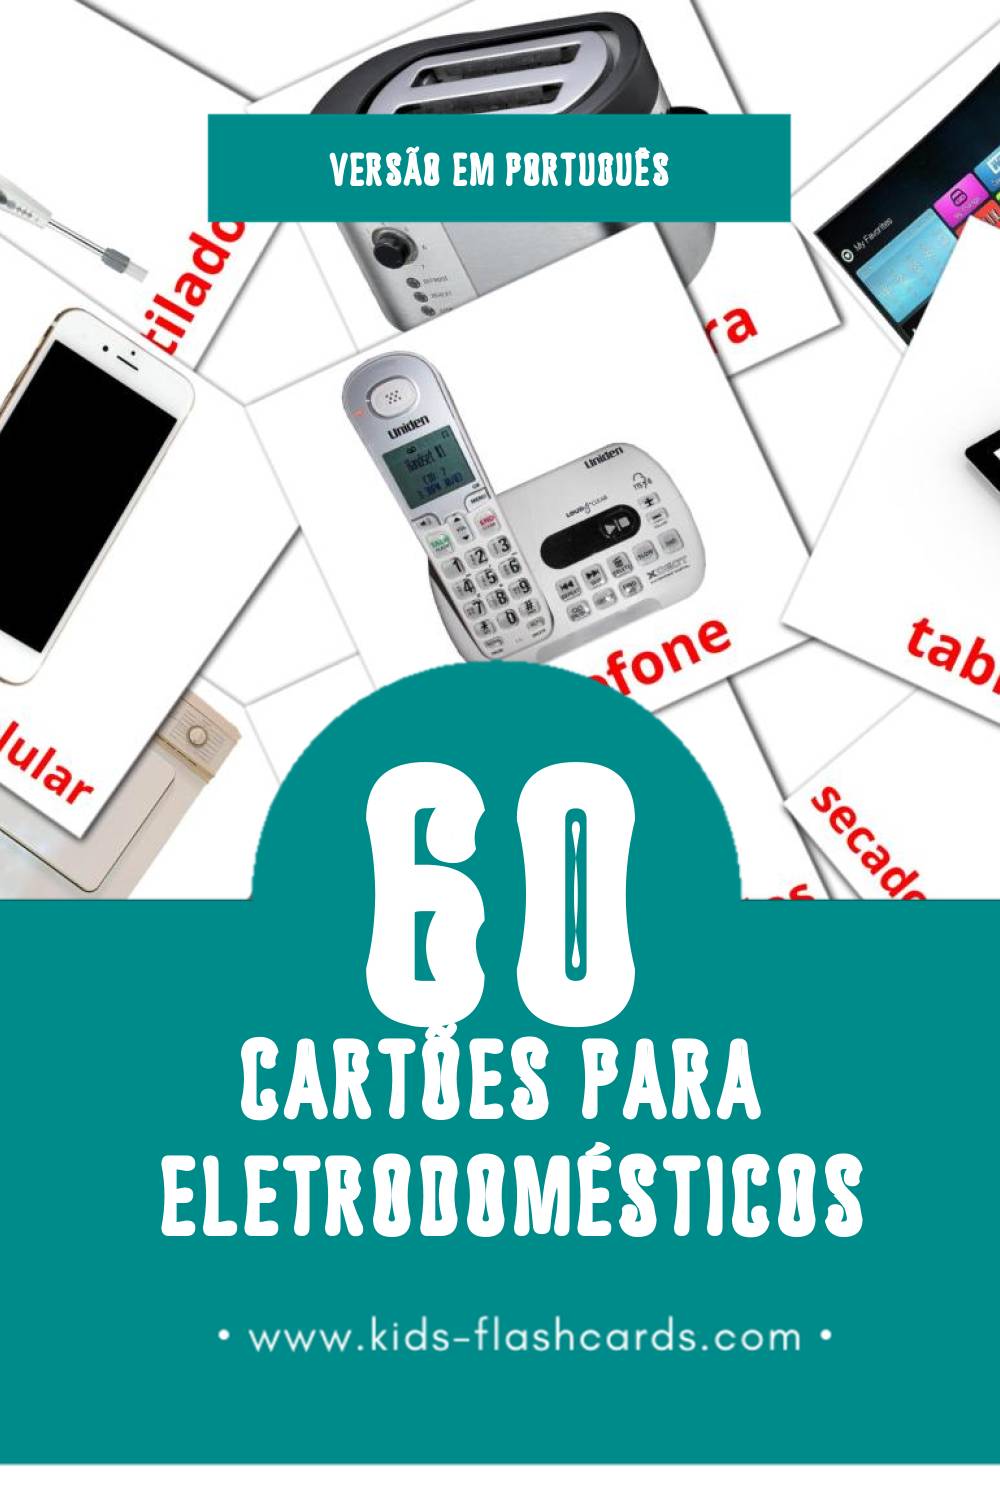 Flashcards de Eletrodomésticos Visuais para Toddlers (61 cartões em Português)